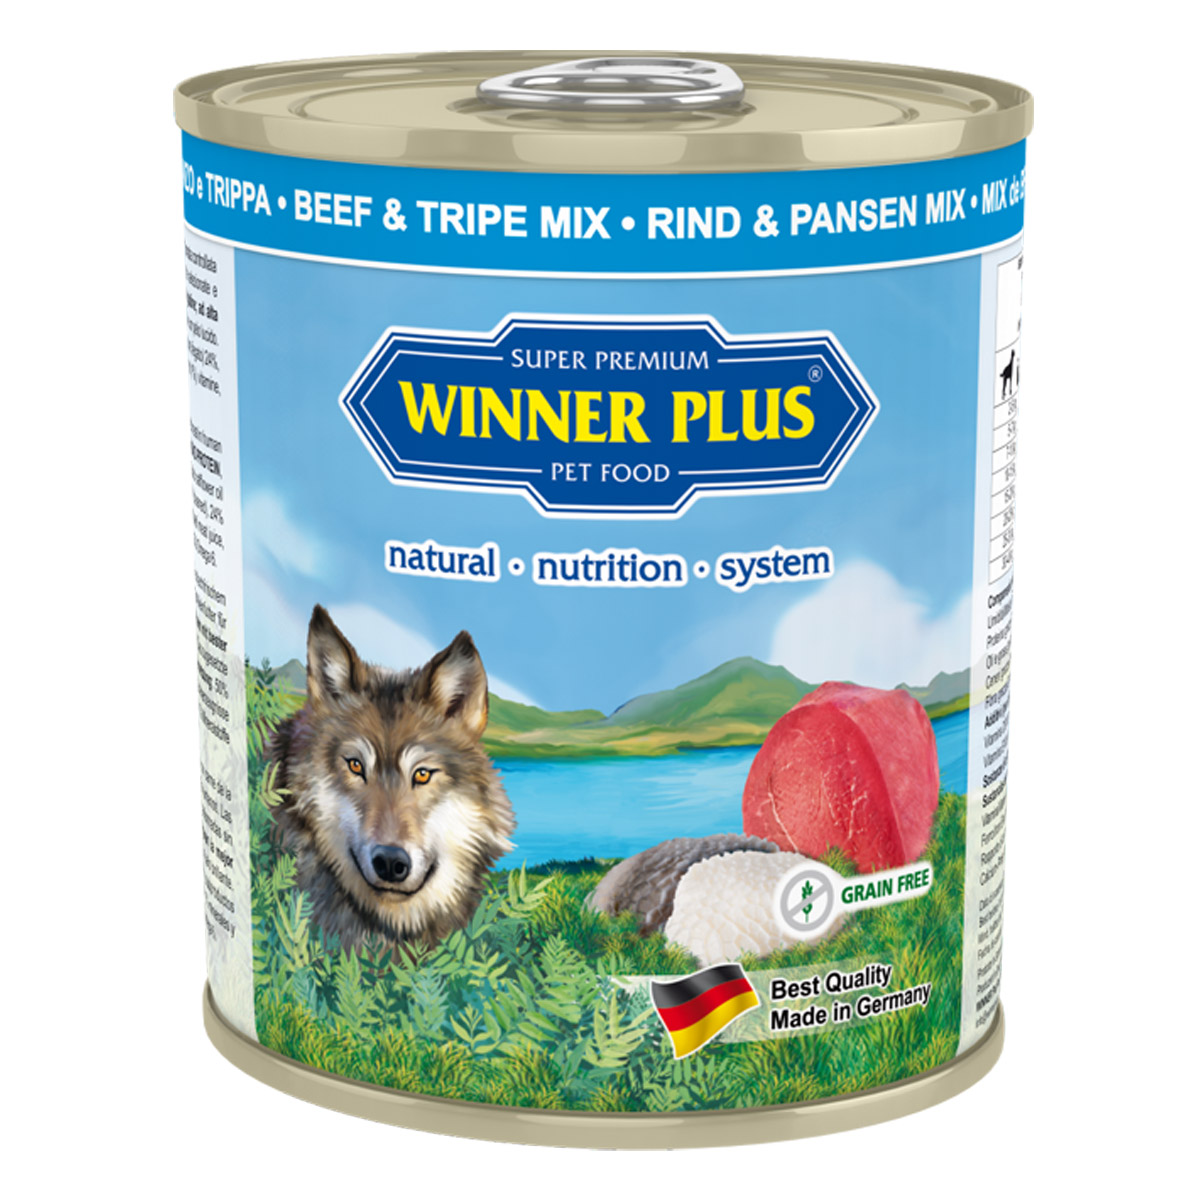 Winner Plus Pure Beef & Tripe Mix 6 x 800 g